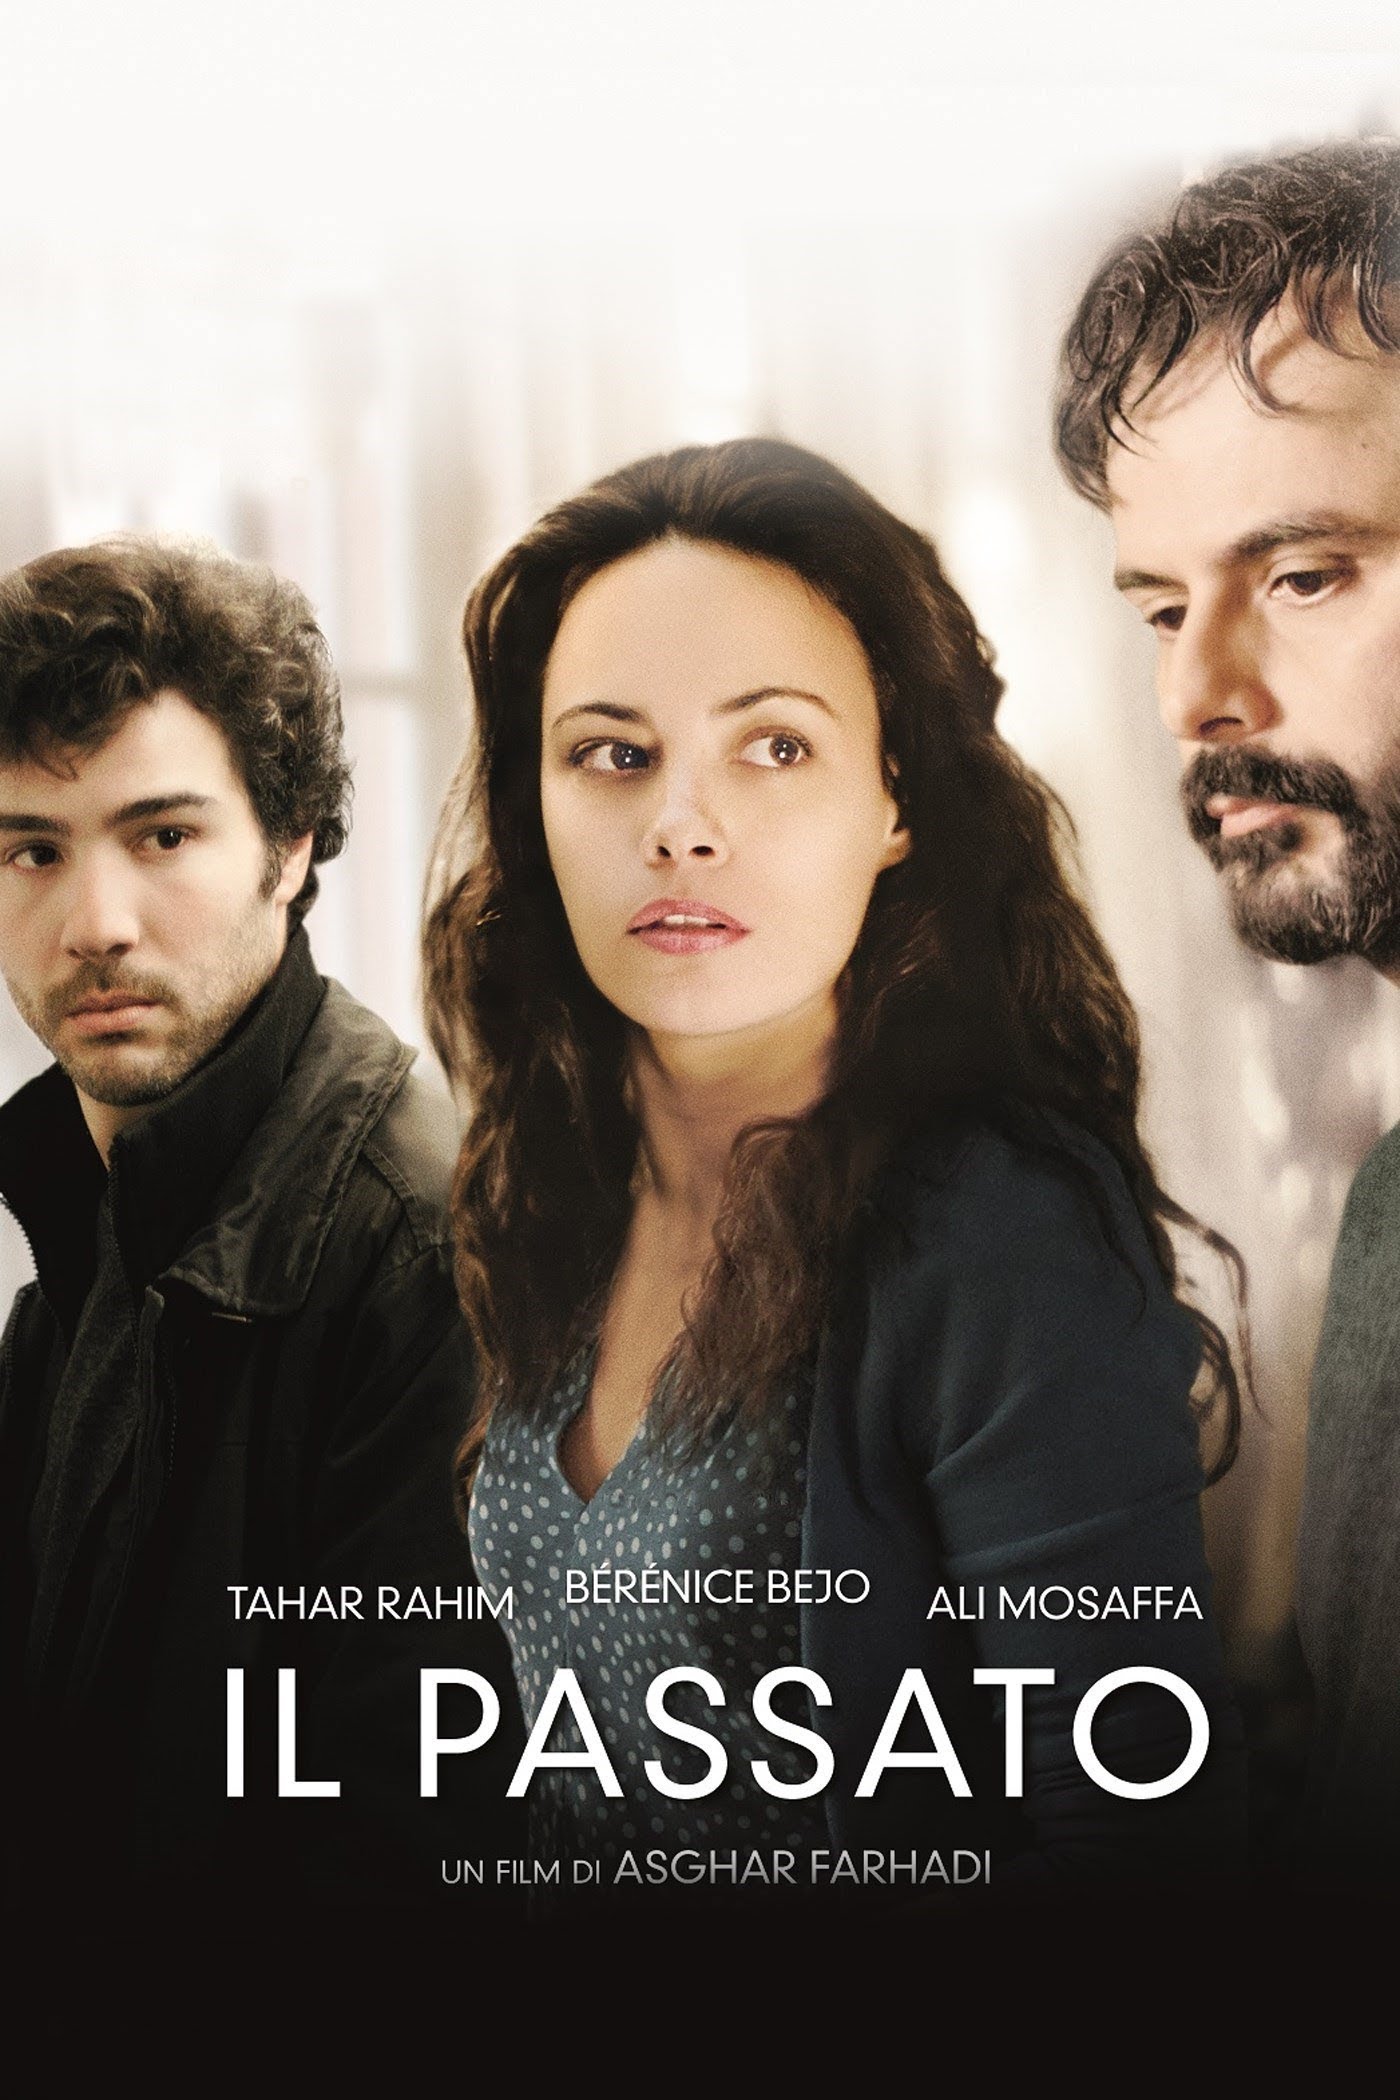 Il passato [HD] (2013)